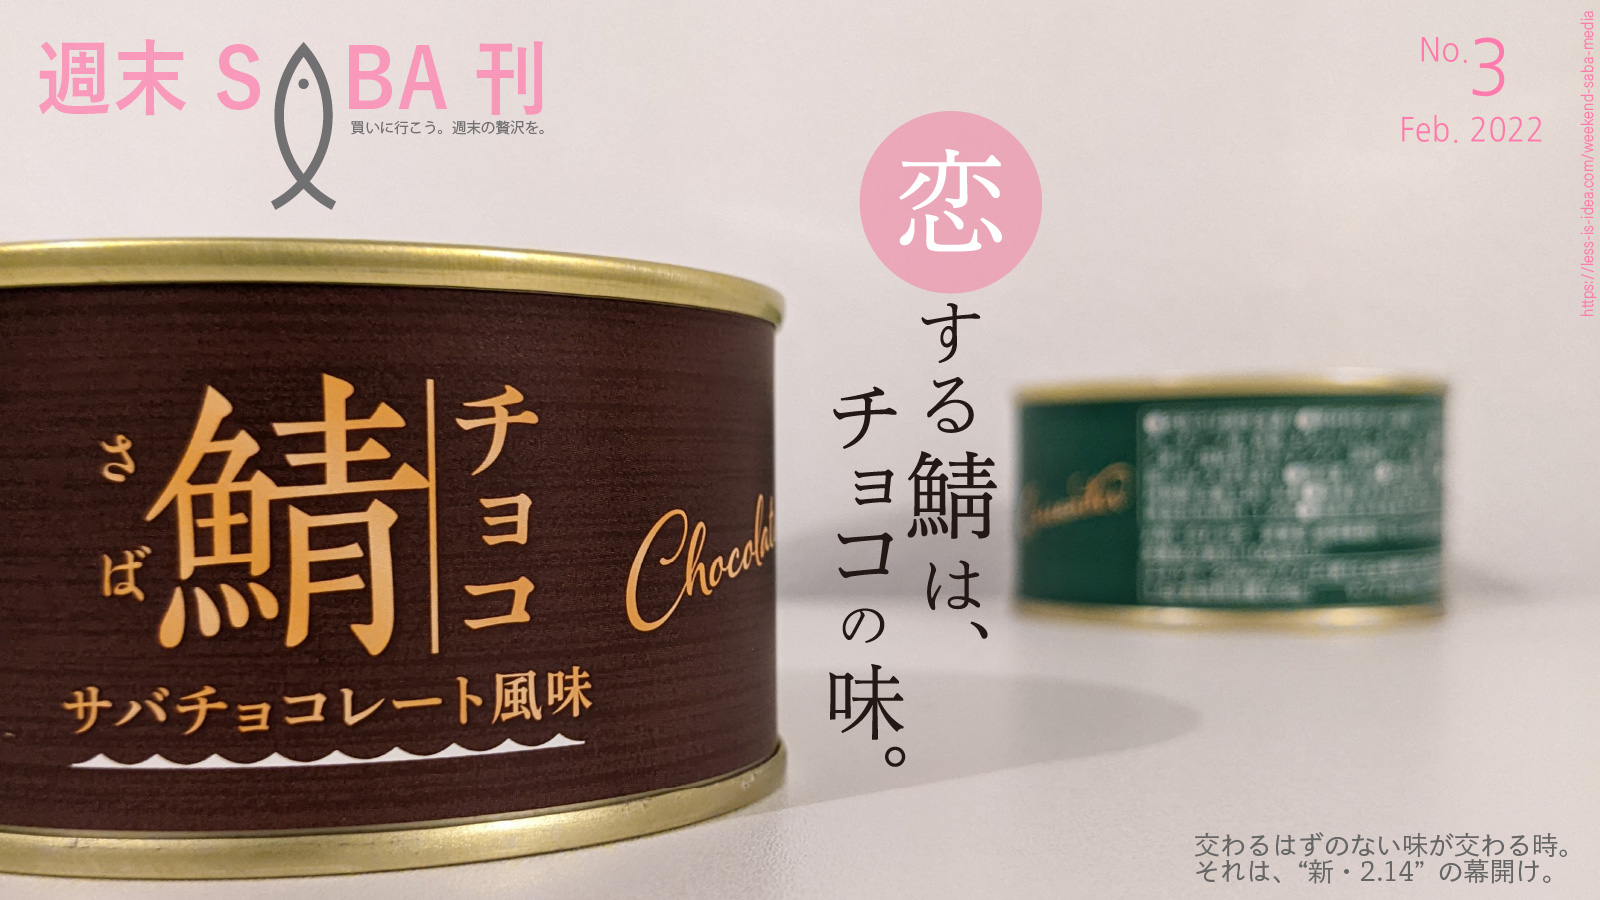 「【週末さば缶#3】岩手缶詰 国産サバ缶 チョコレート風味」のアイキャッチ画像